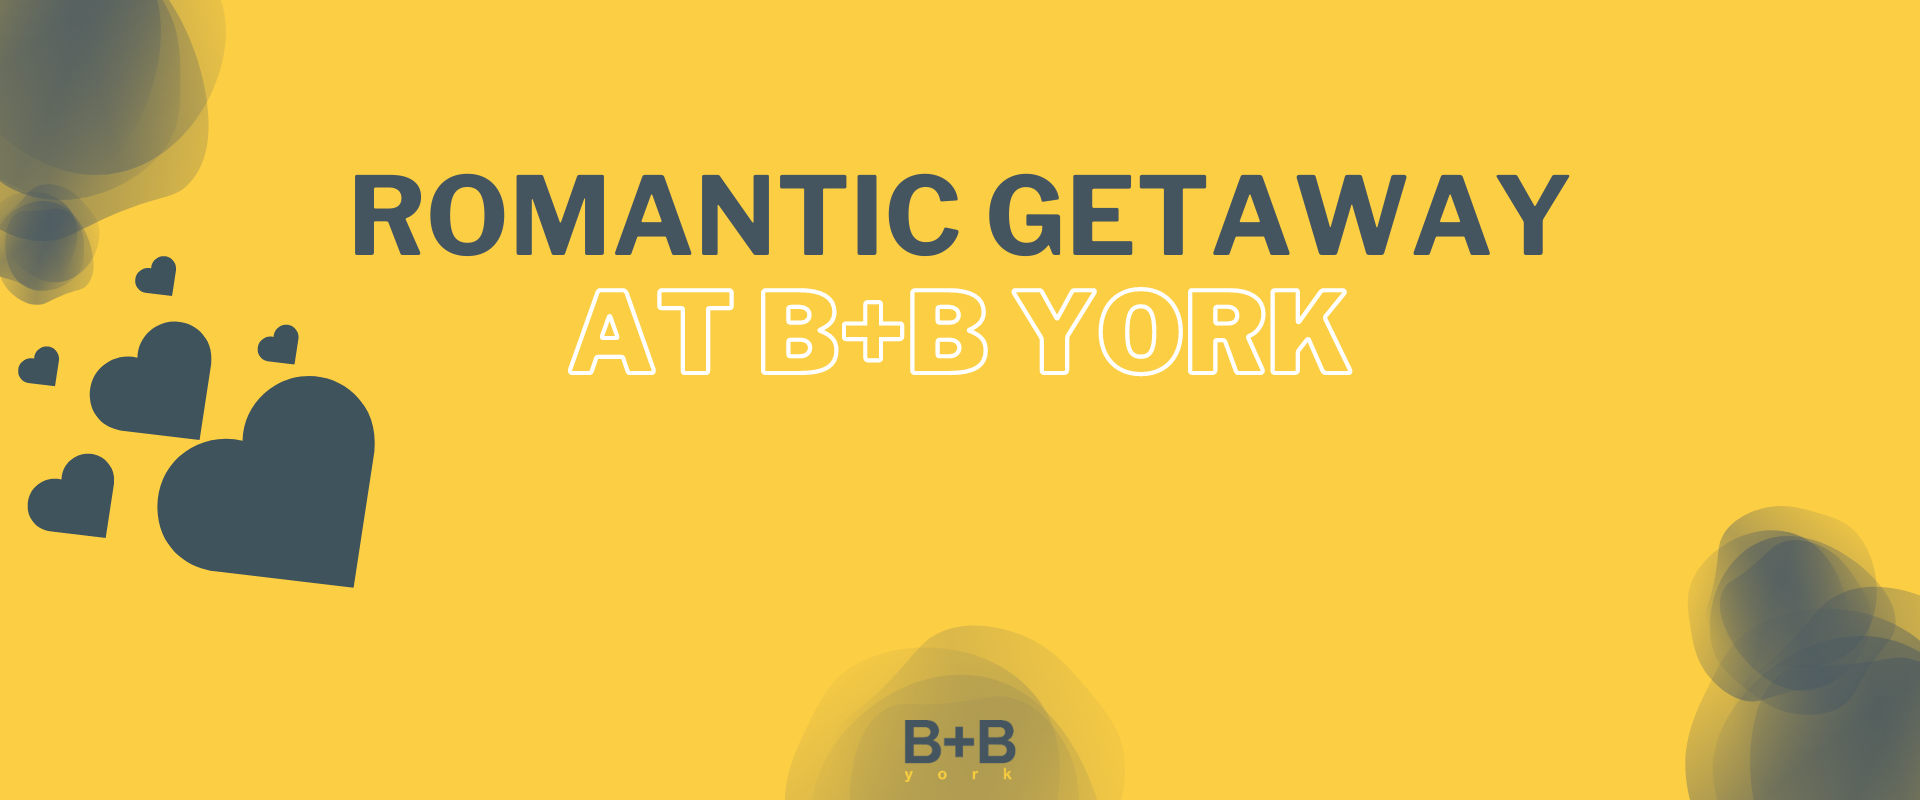 Romantic Getaway at B+B York